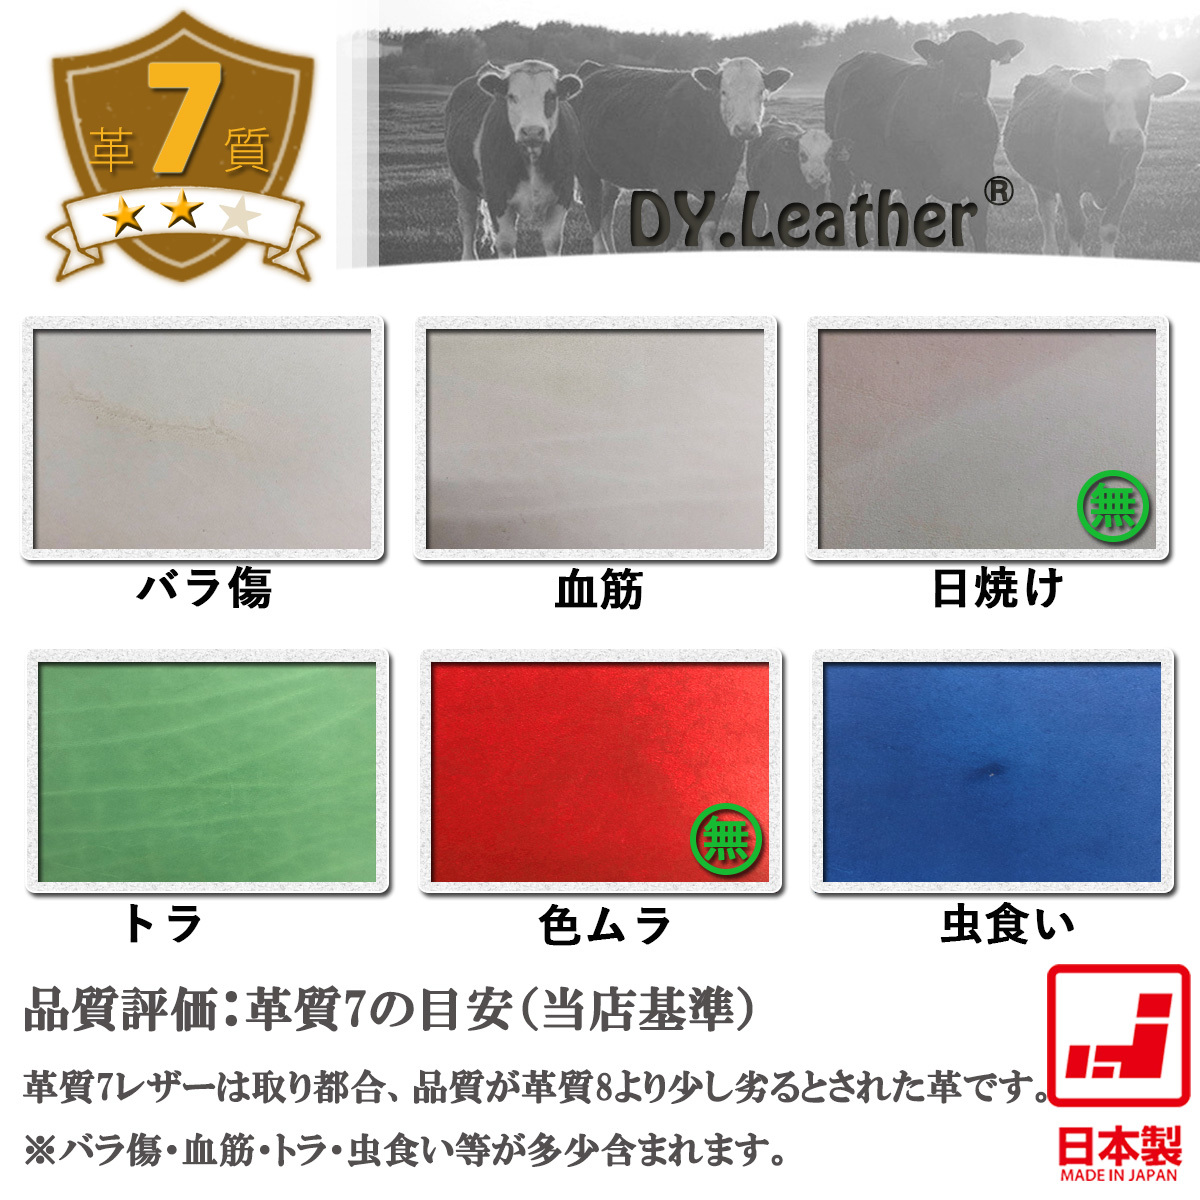 【DY.leather 正品】「A4サイズ/薄紅品質7/2.0mm」国産新品特価 ヌメ革はぎれ コラールピンク タンニンなめし~送料無料~の画像3